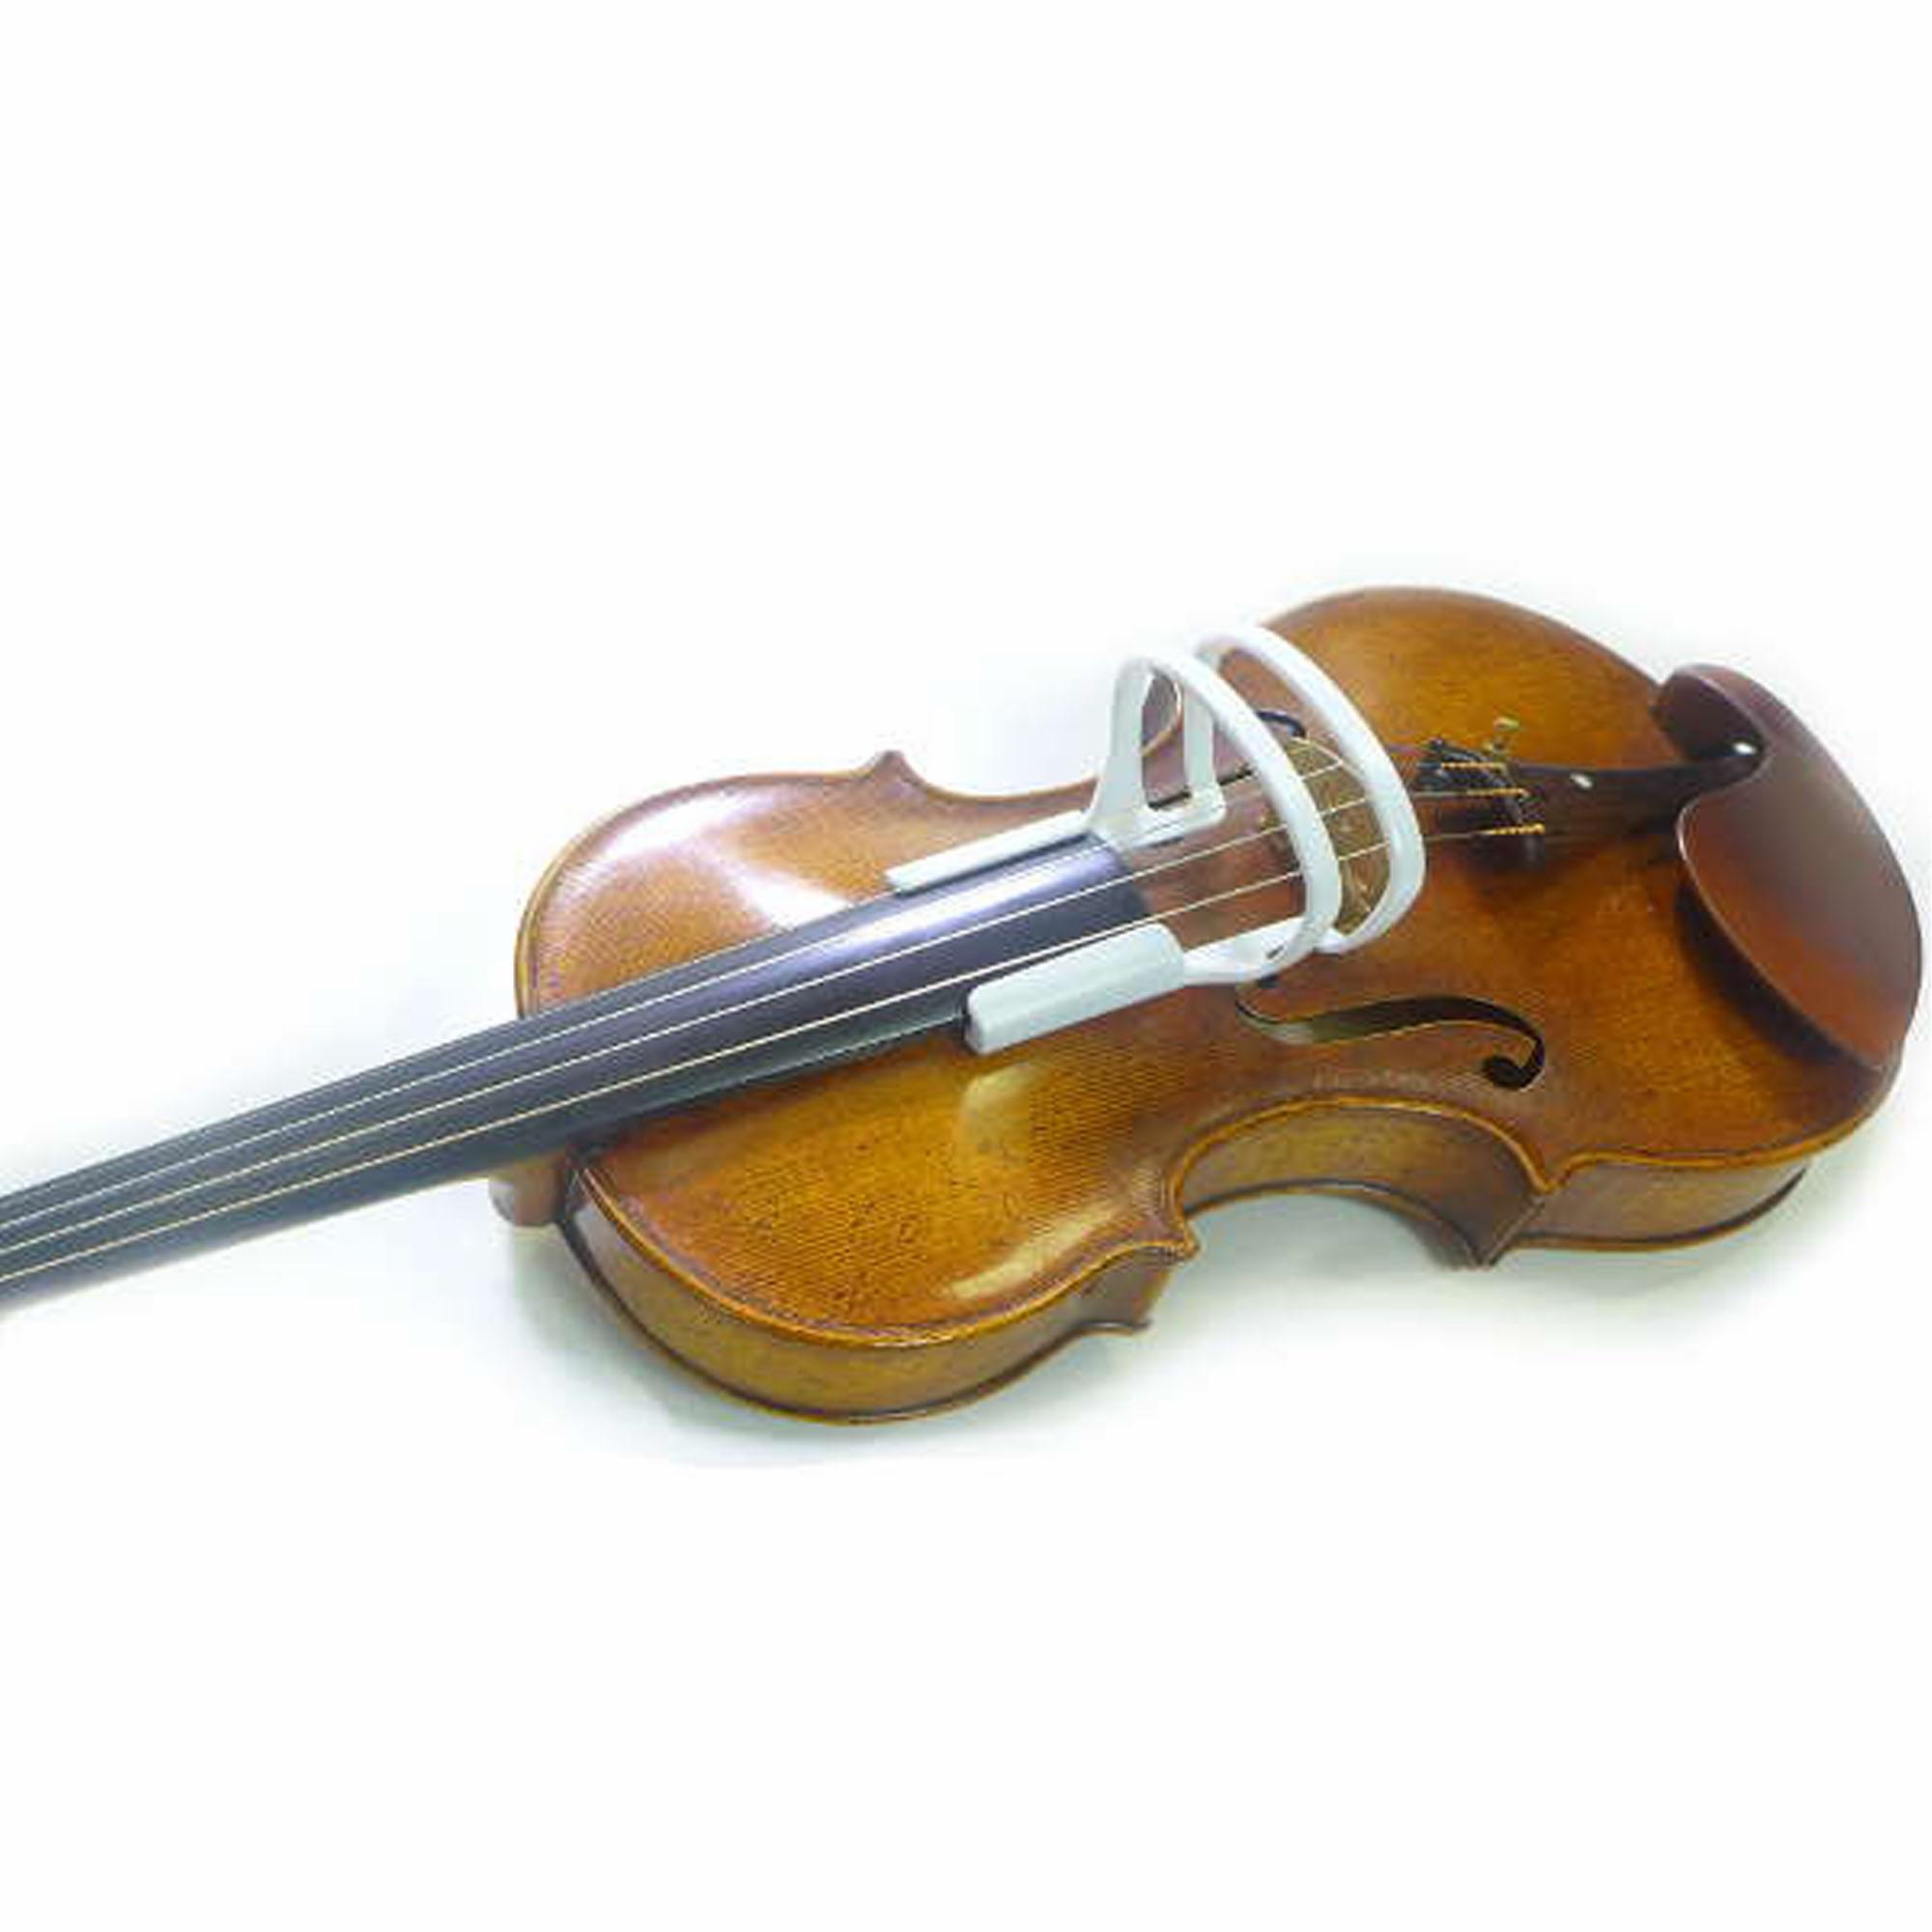 ABC Arm Bow Corrector for Violin/Viola or Cello